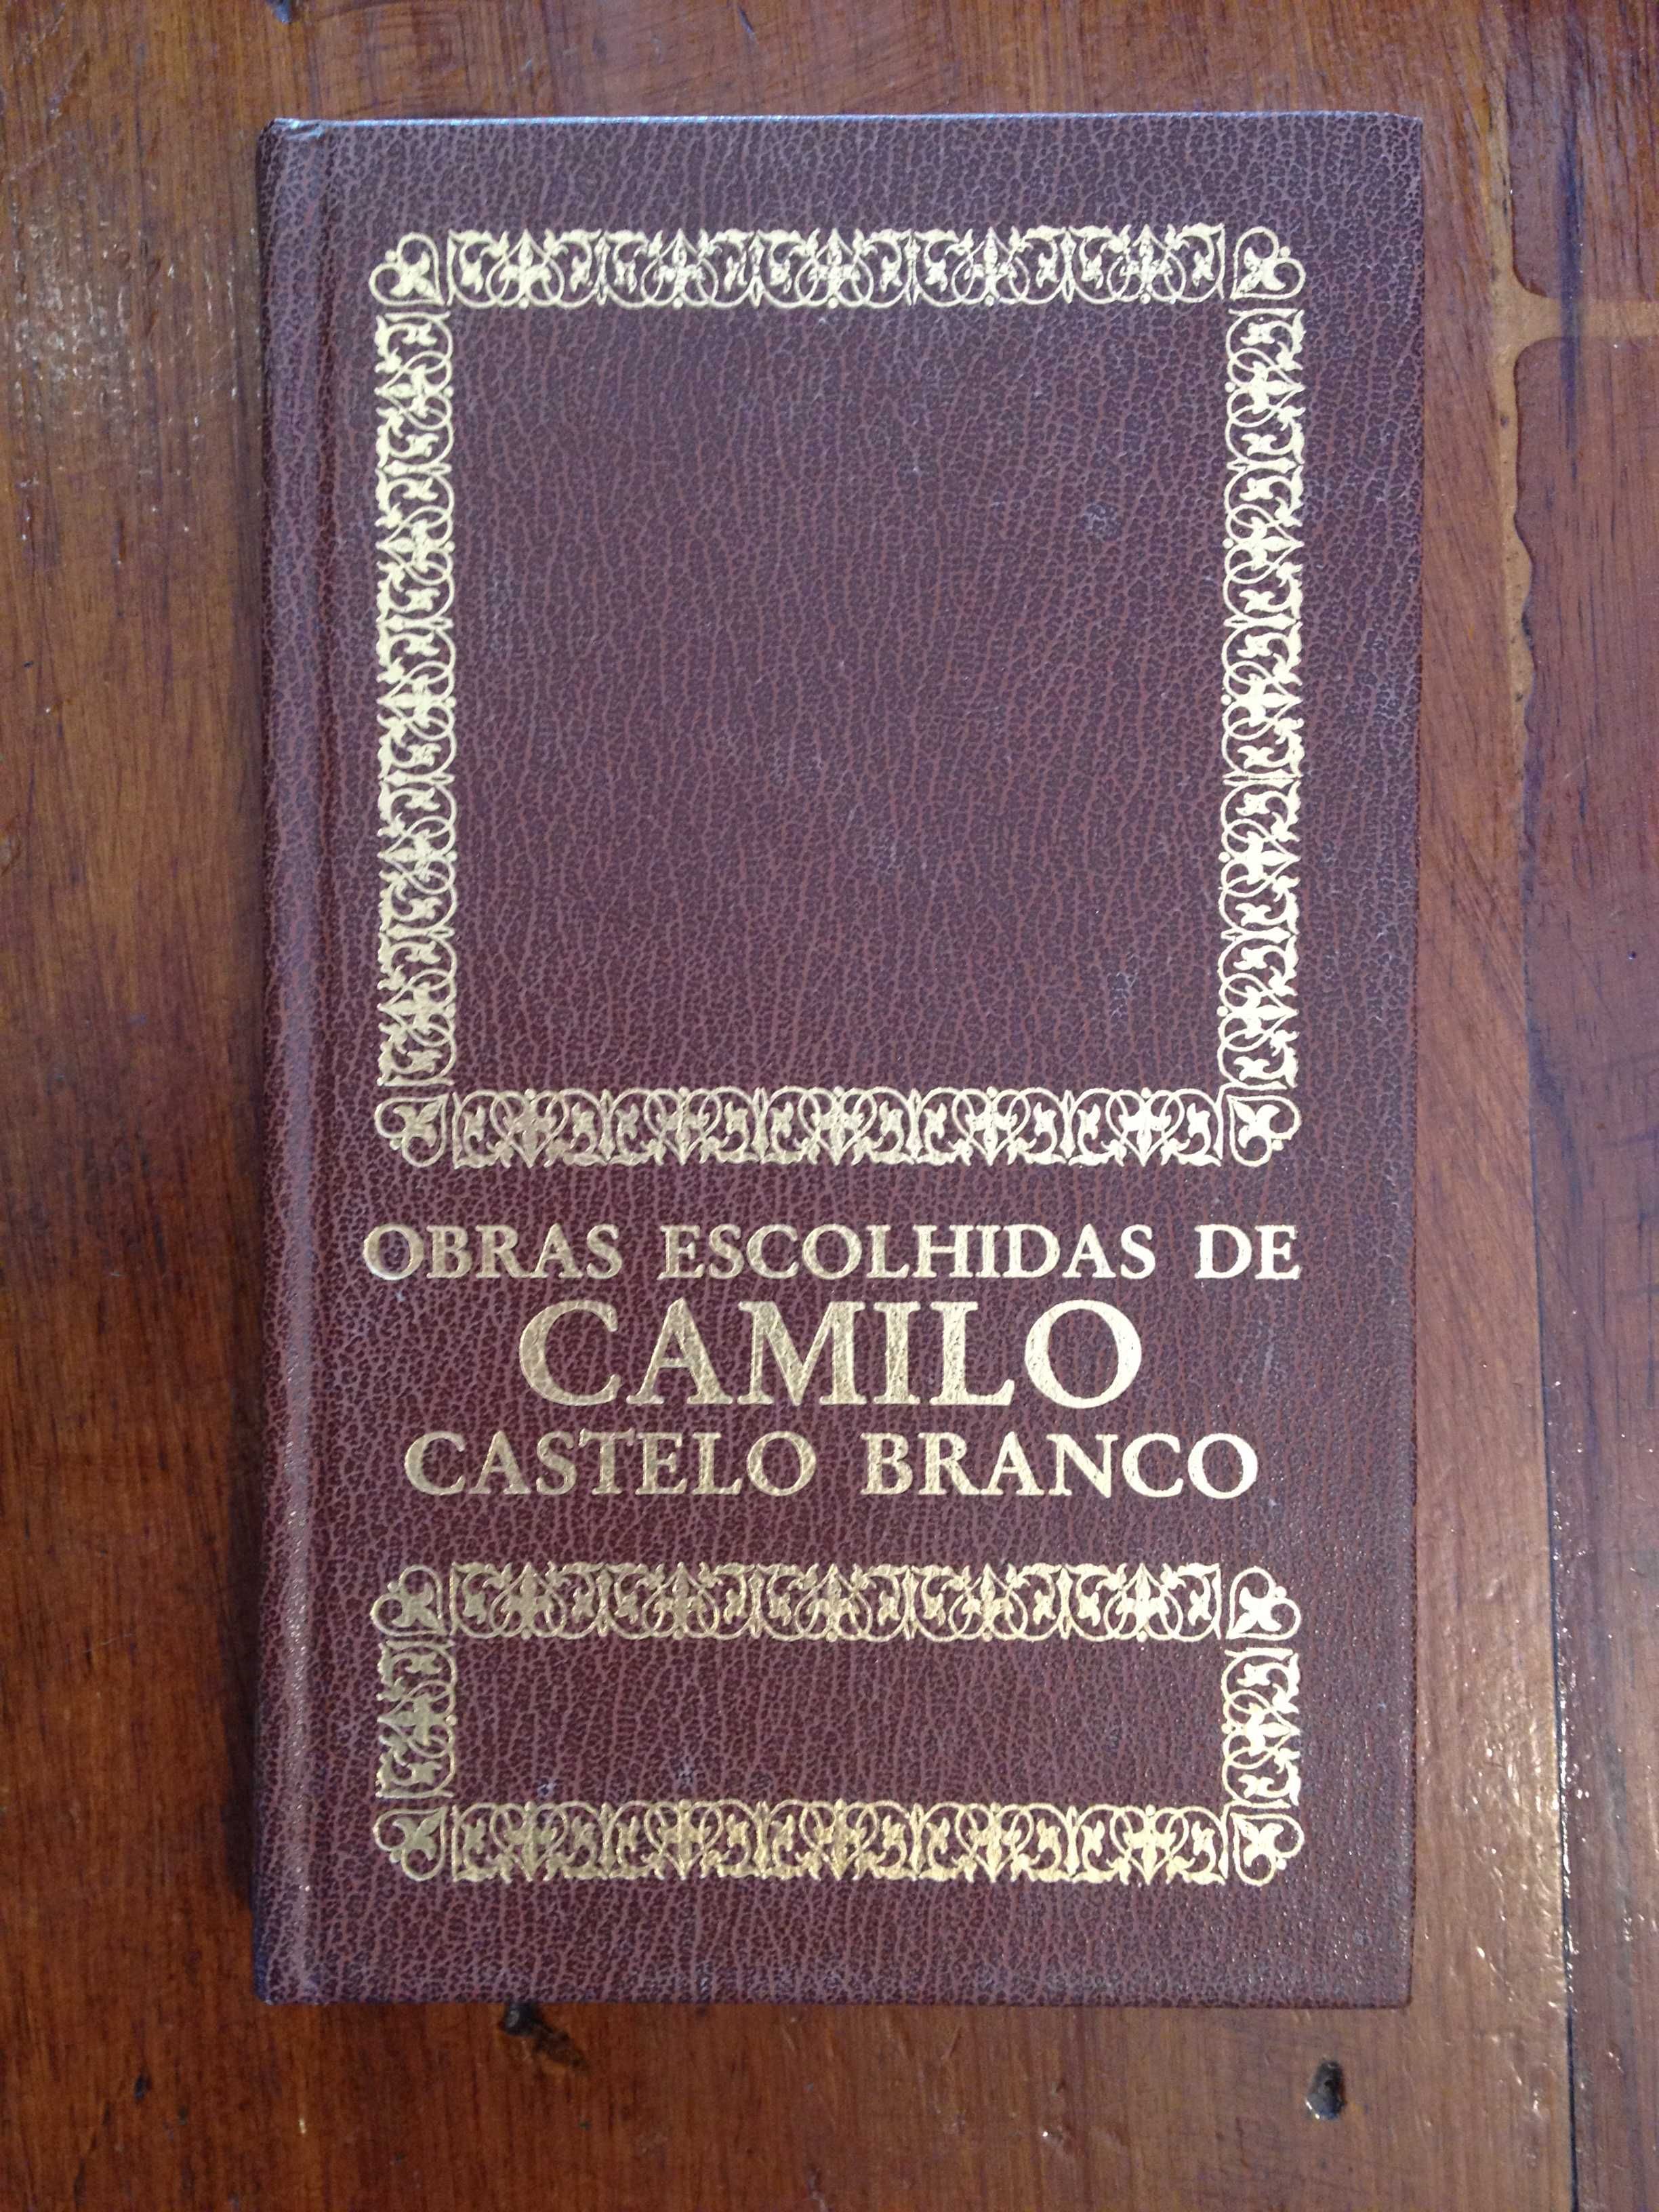 Camilo Castelo Branco - A filha do Arcediago